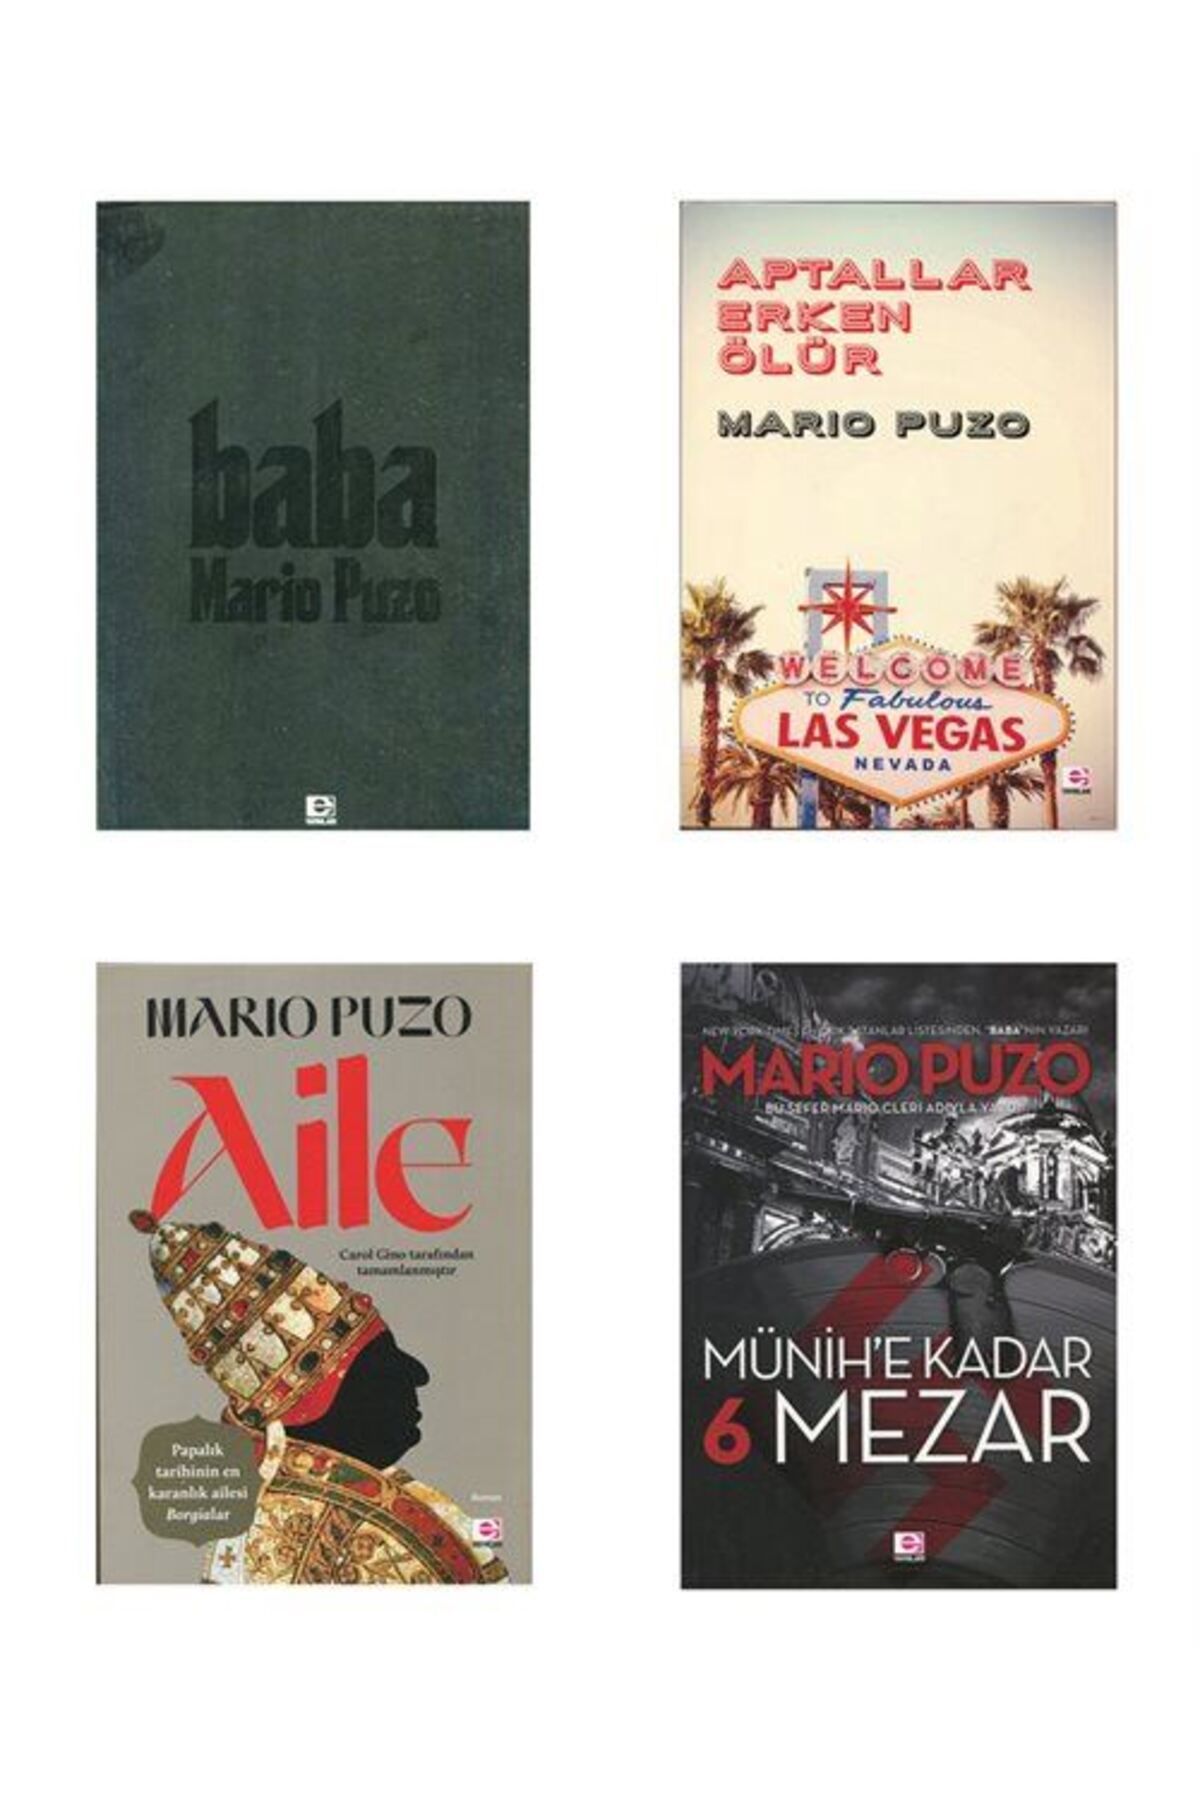 E yayınları Mario Puzo Kitapları 4 Kitap Set Baba, Aile, Aptallar Erken Ölür, Münihe Kadar 6 Mezar